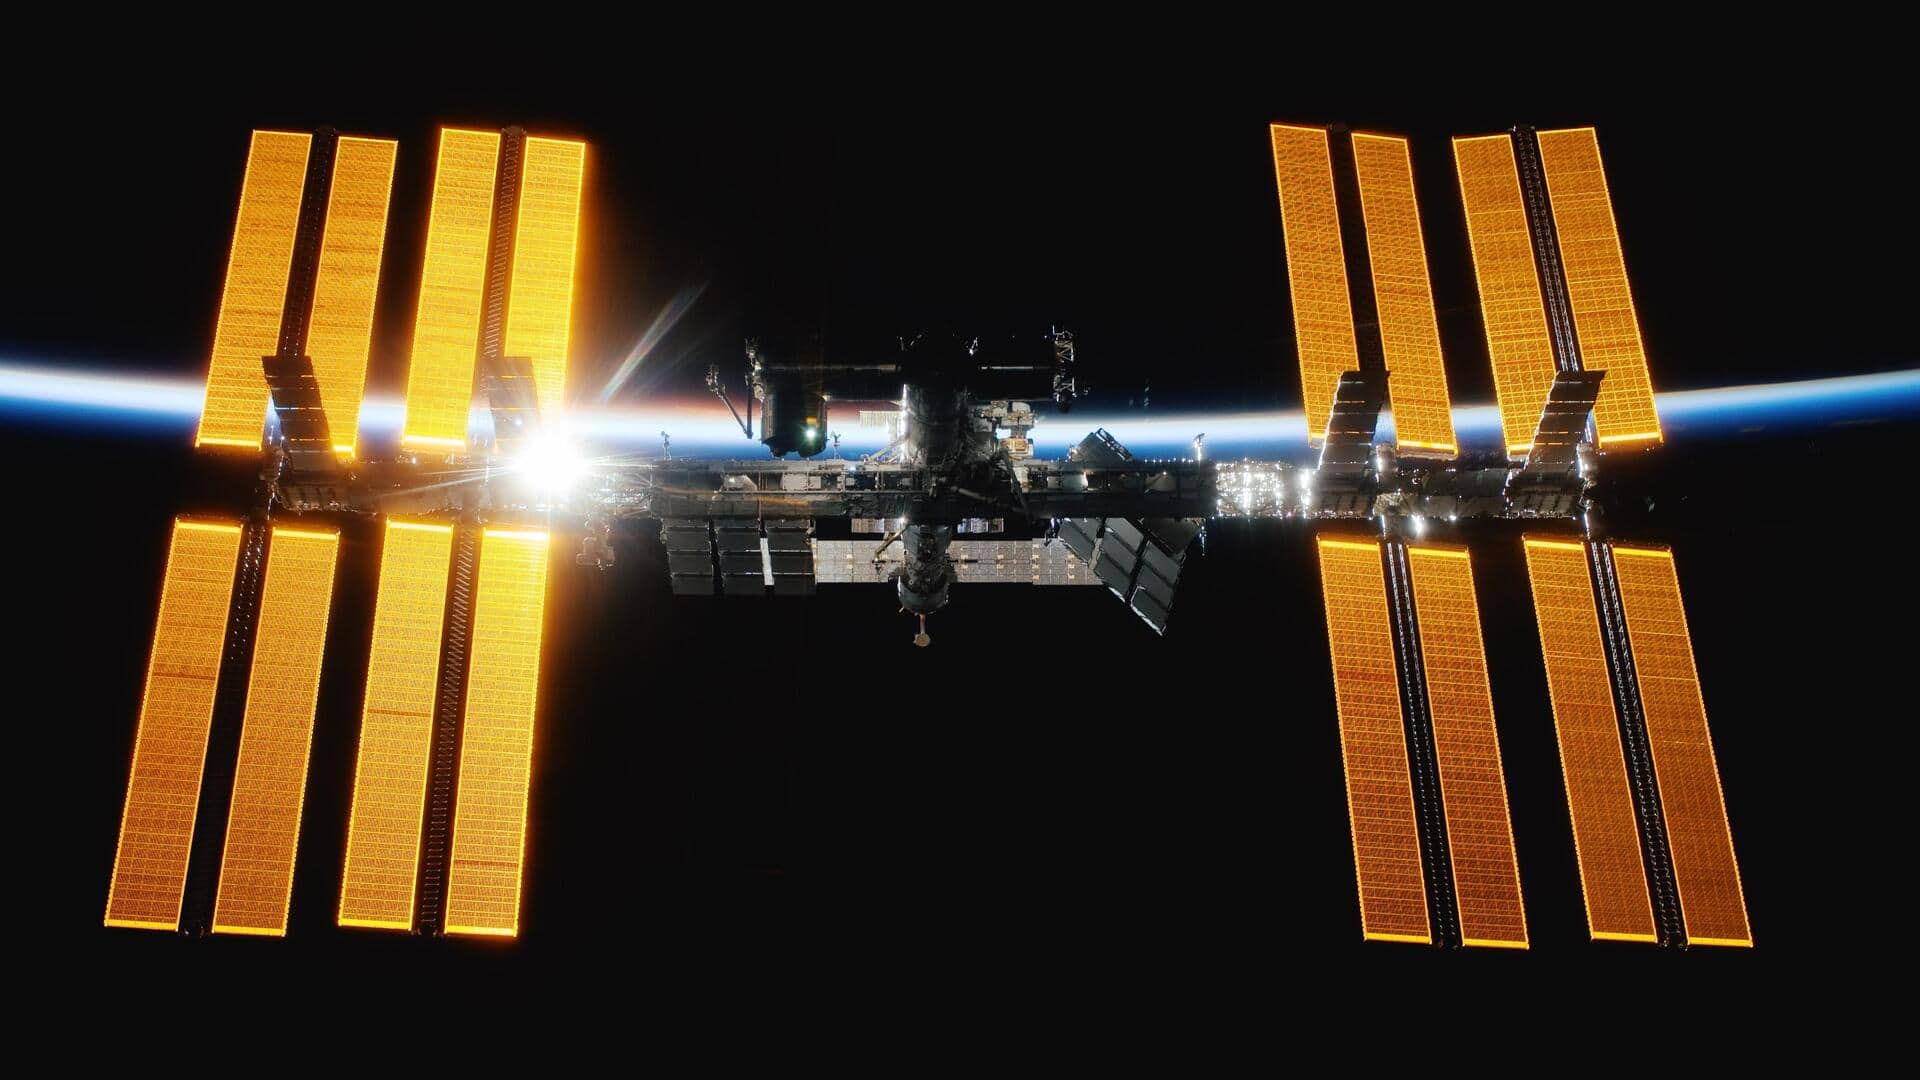 अंतरराष्ट्रीय स्पेस स्टेशन में जाने के लिए भारतीय अंतरिक्ष यात्री को ट्रेनिंग देगी नासा